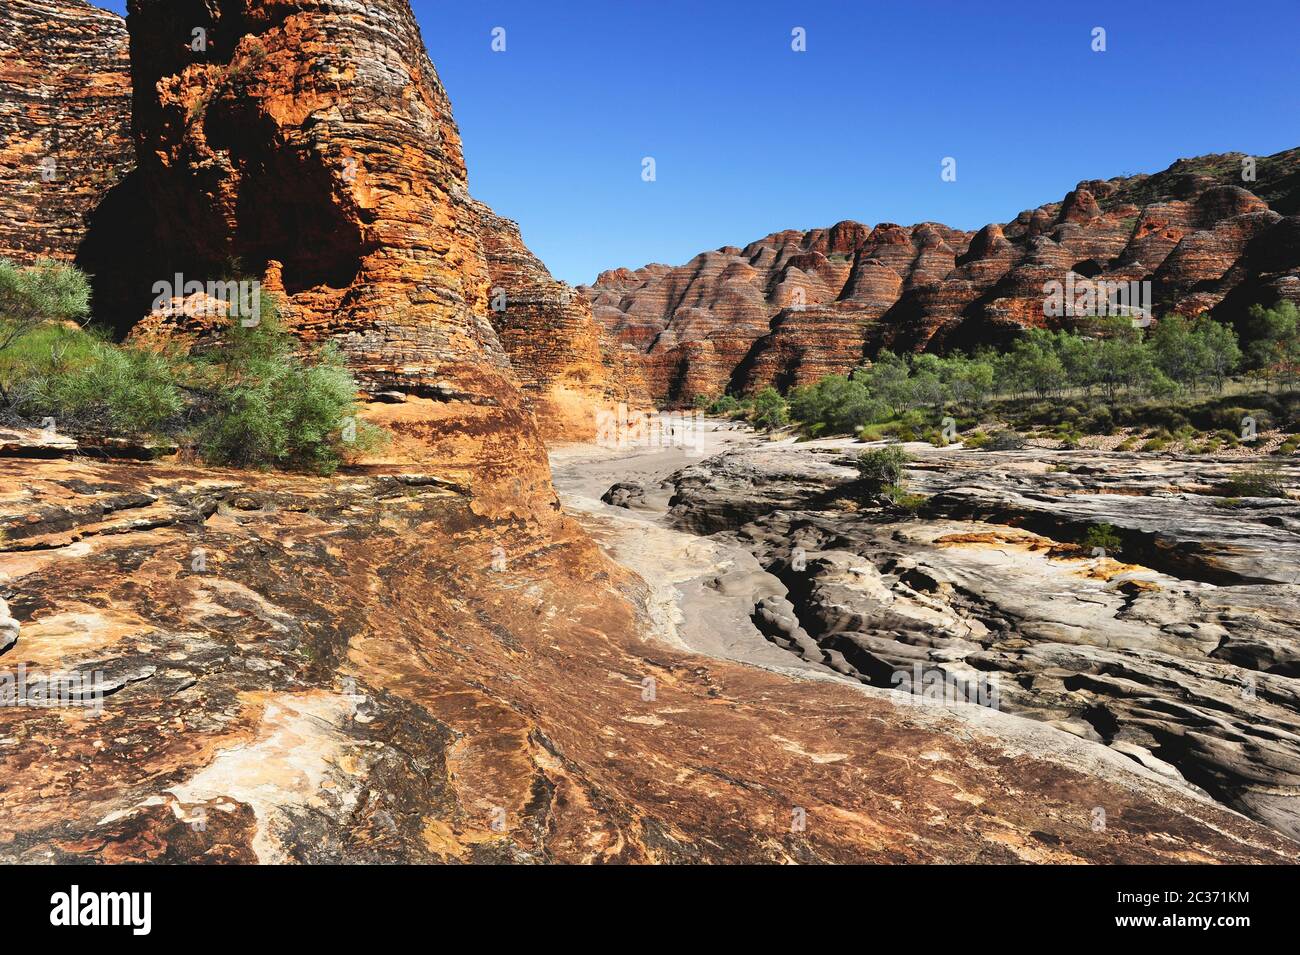 El Parque Nacional de Purnululu o Bungle Bungles es una zona declarada Patrimonio de la Humanidad y popular destino turístico para los turistas en el Outback de Australia Occidental. Foto de stock